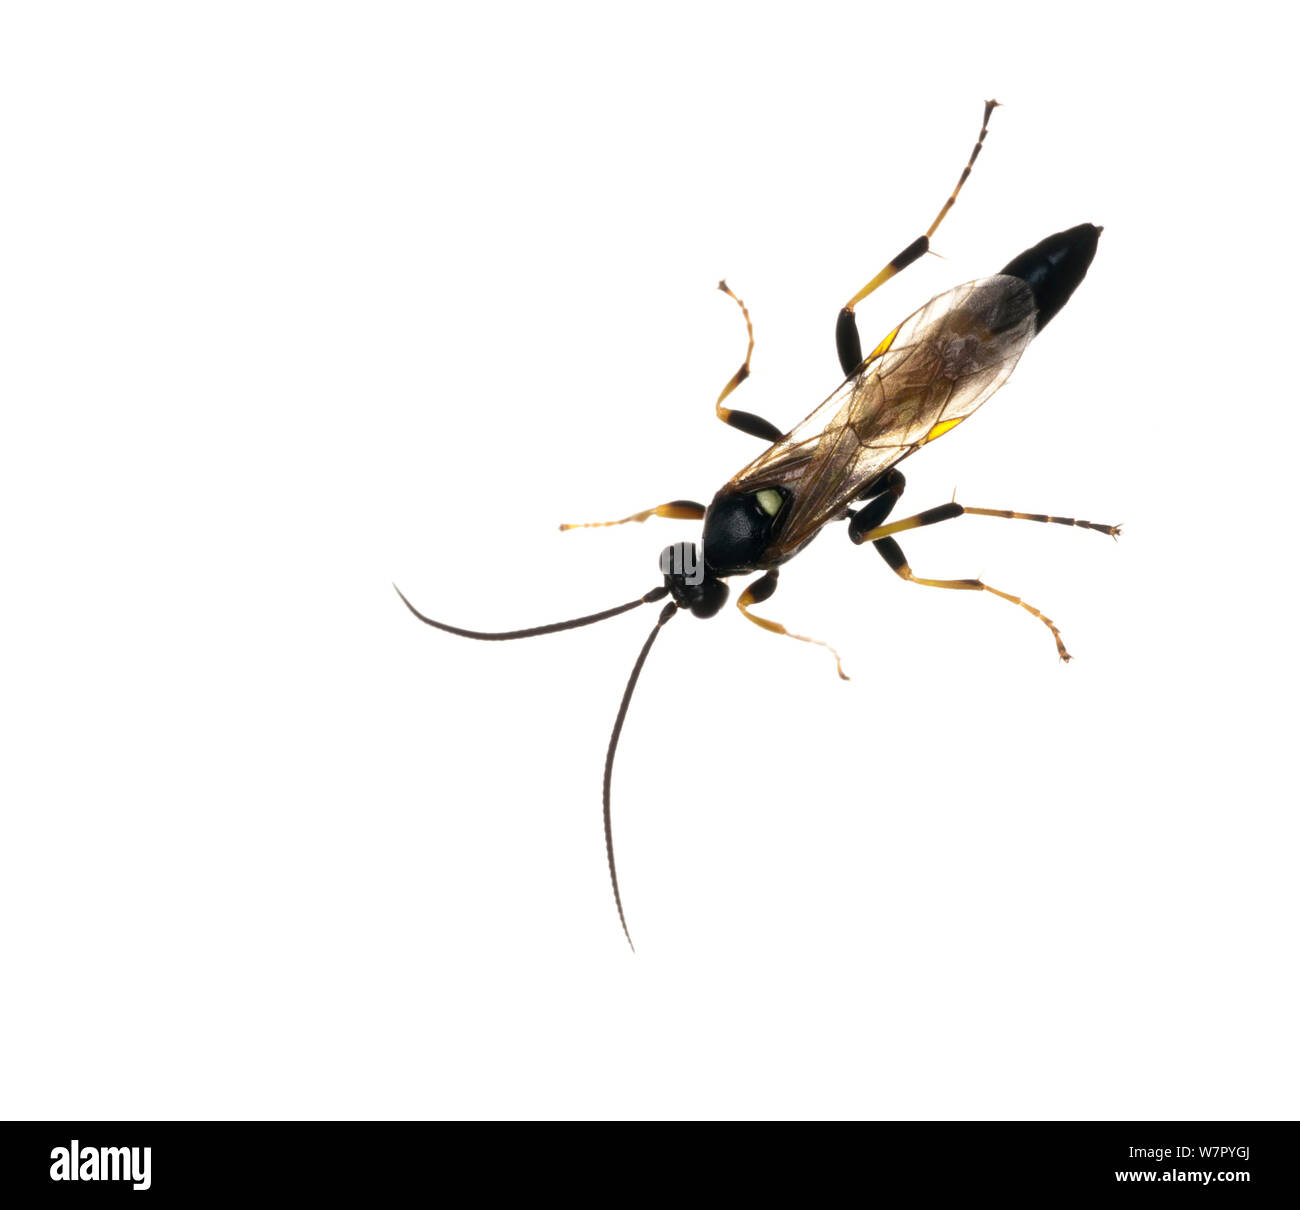 Ichneumon wasp (Ichneumonidae) on white background. Scotland, UK, July. Stock Photo